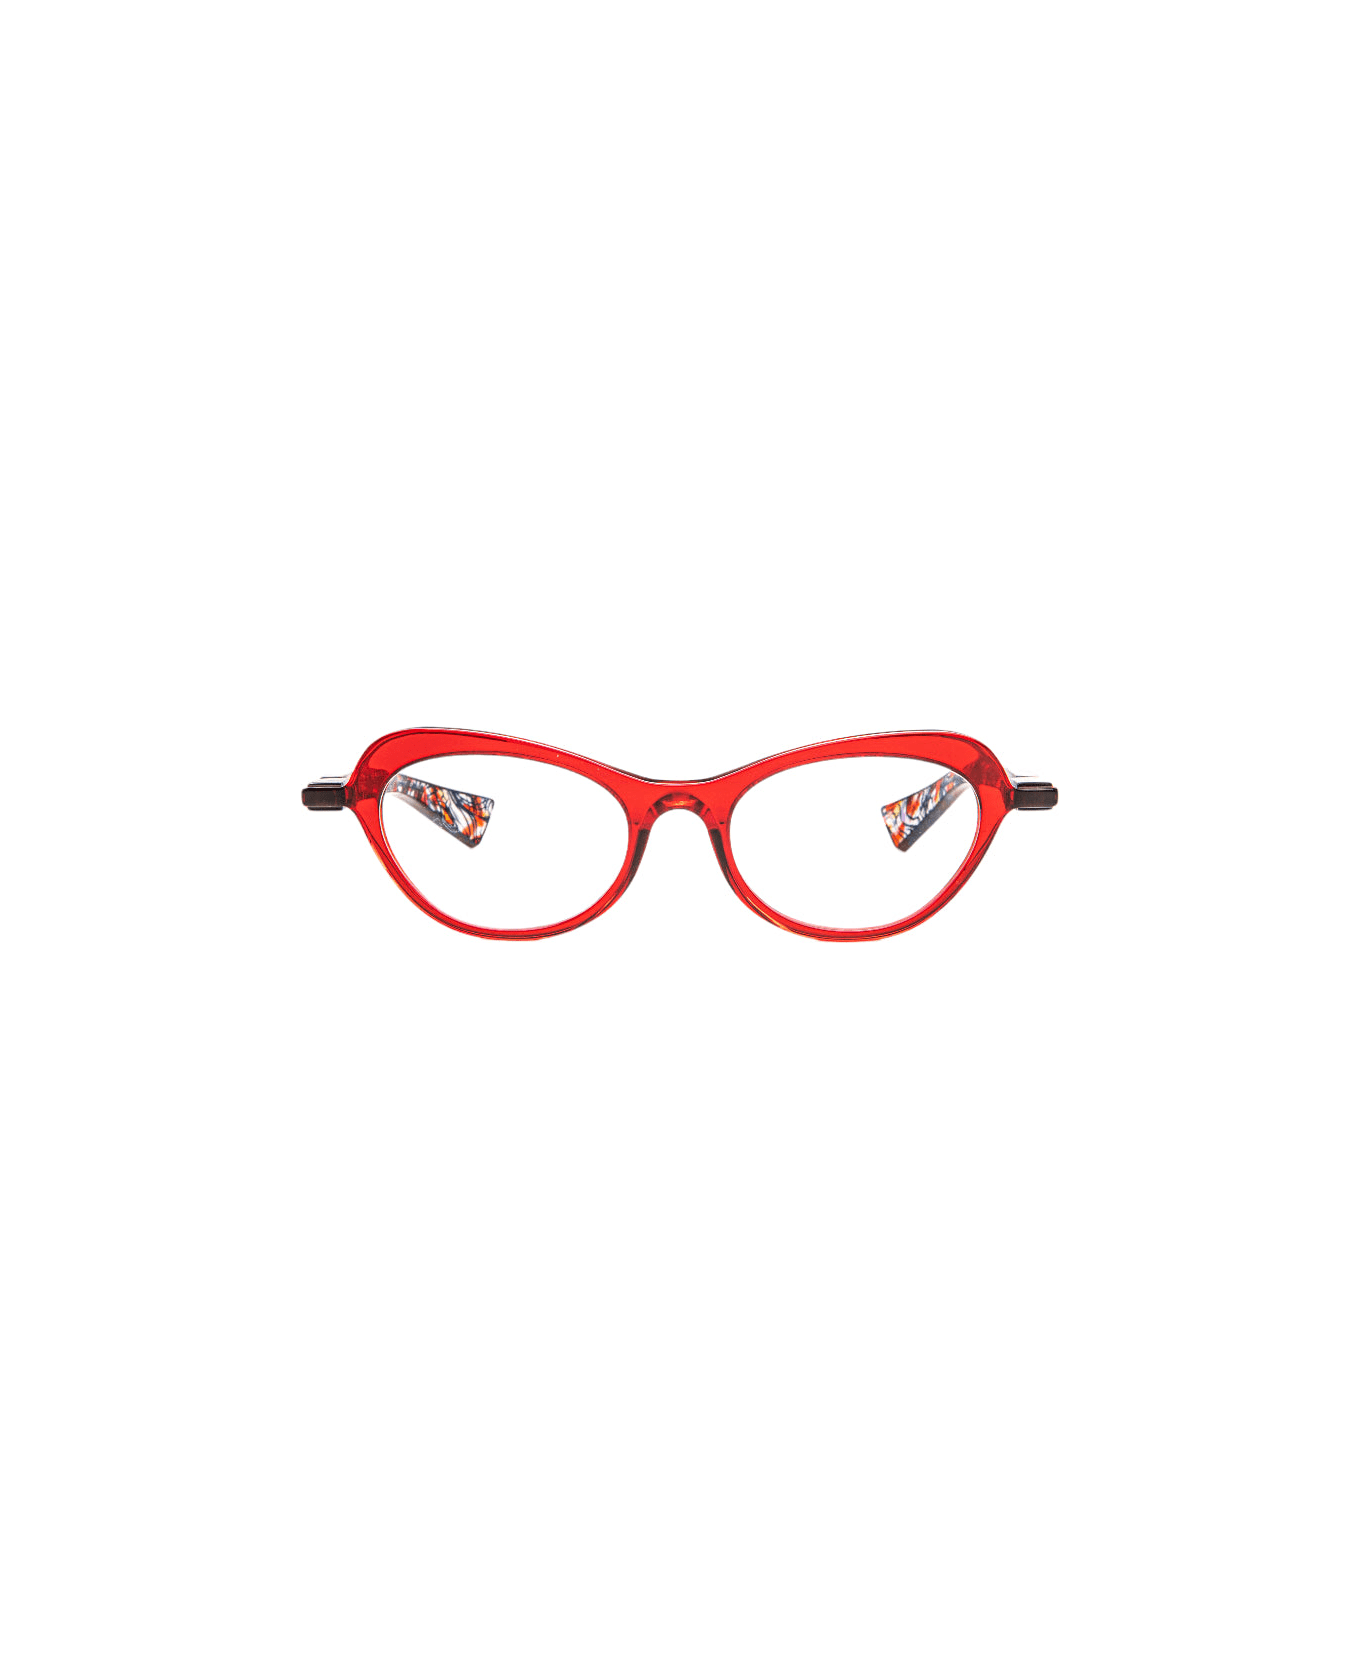 Piero Massaro Pm483 - Red Glasses アイウェア